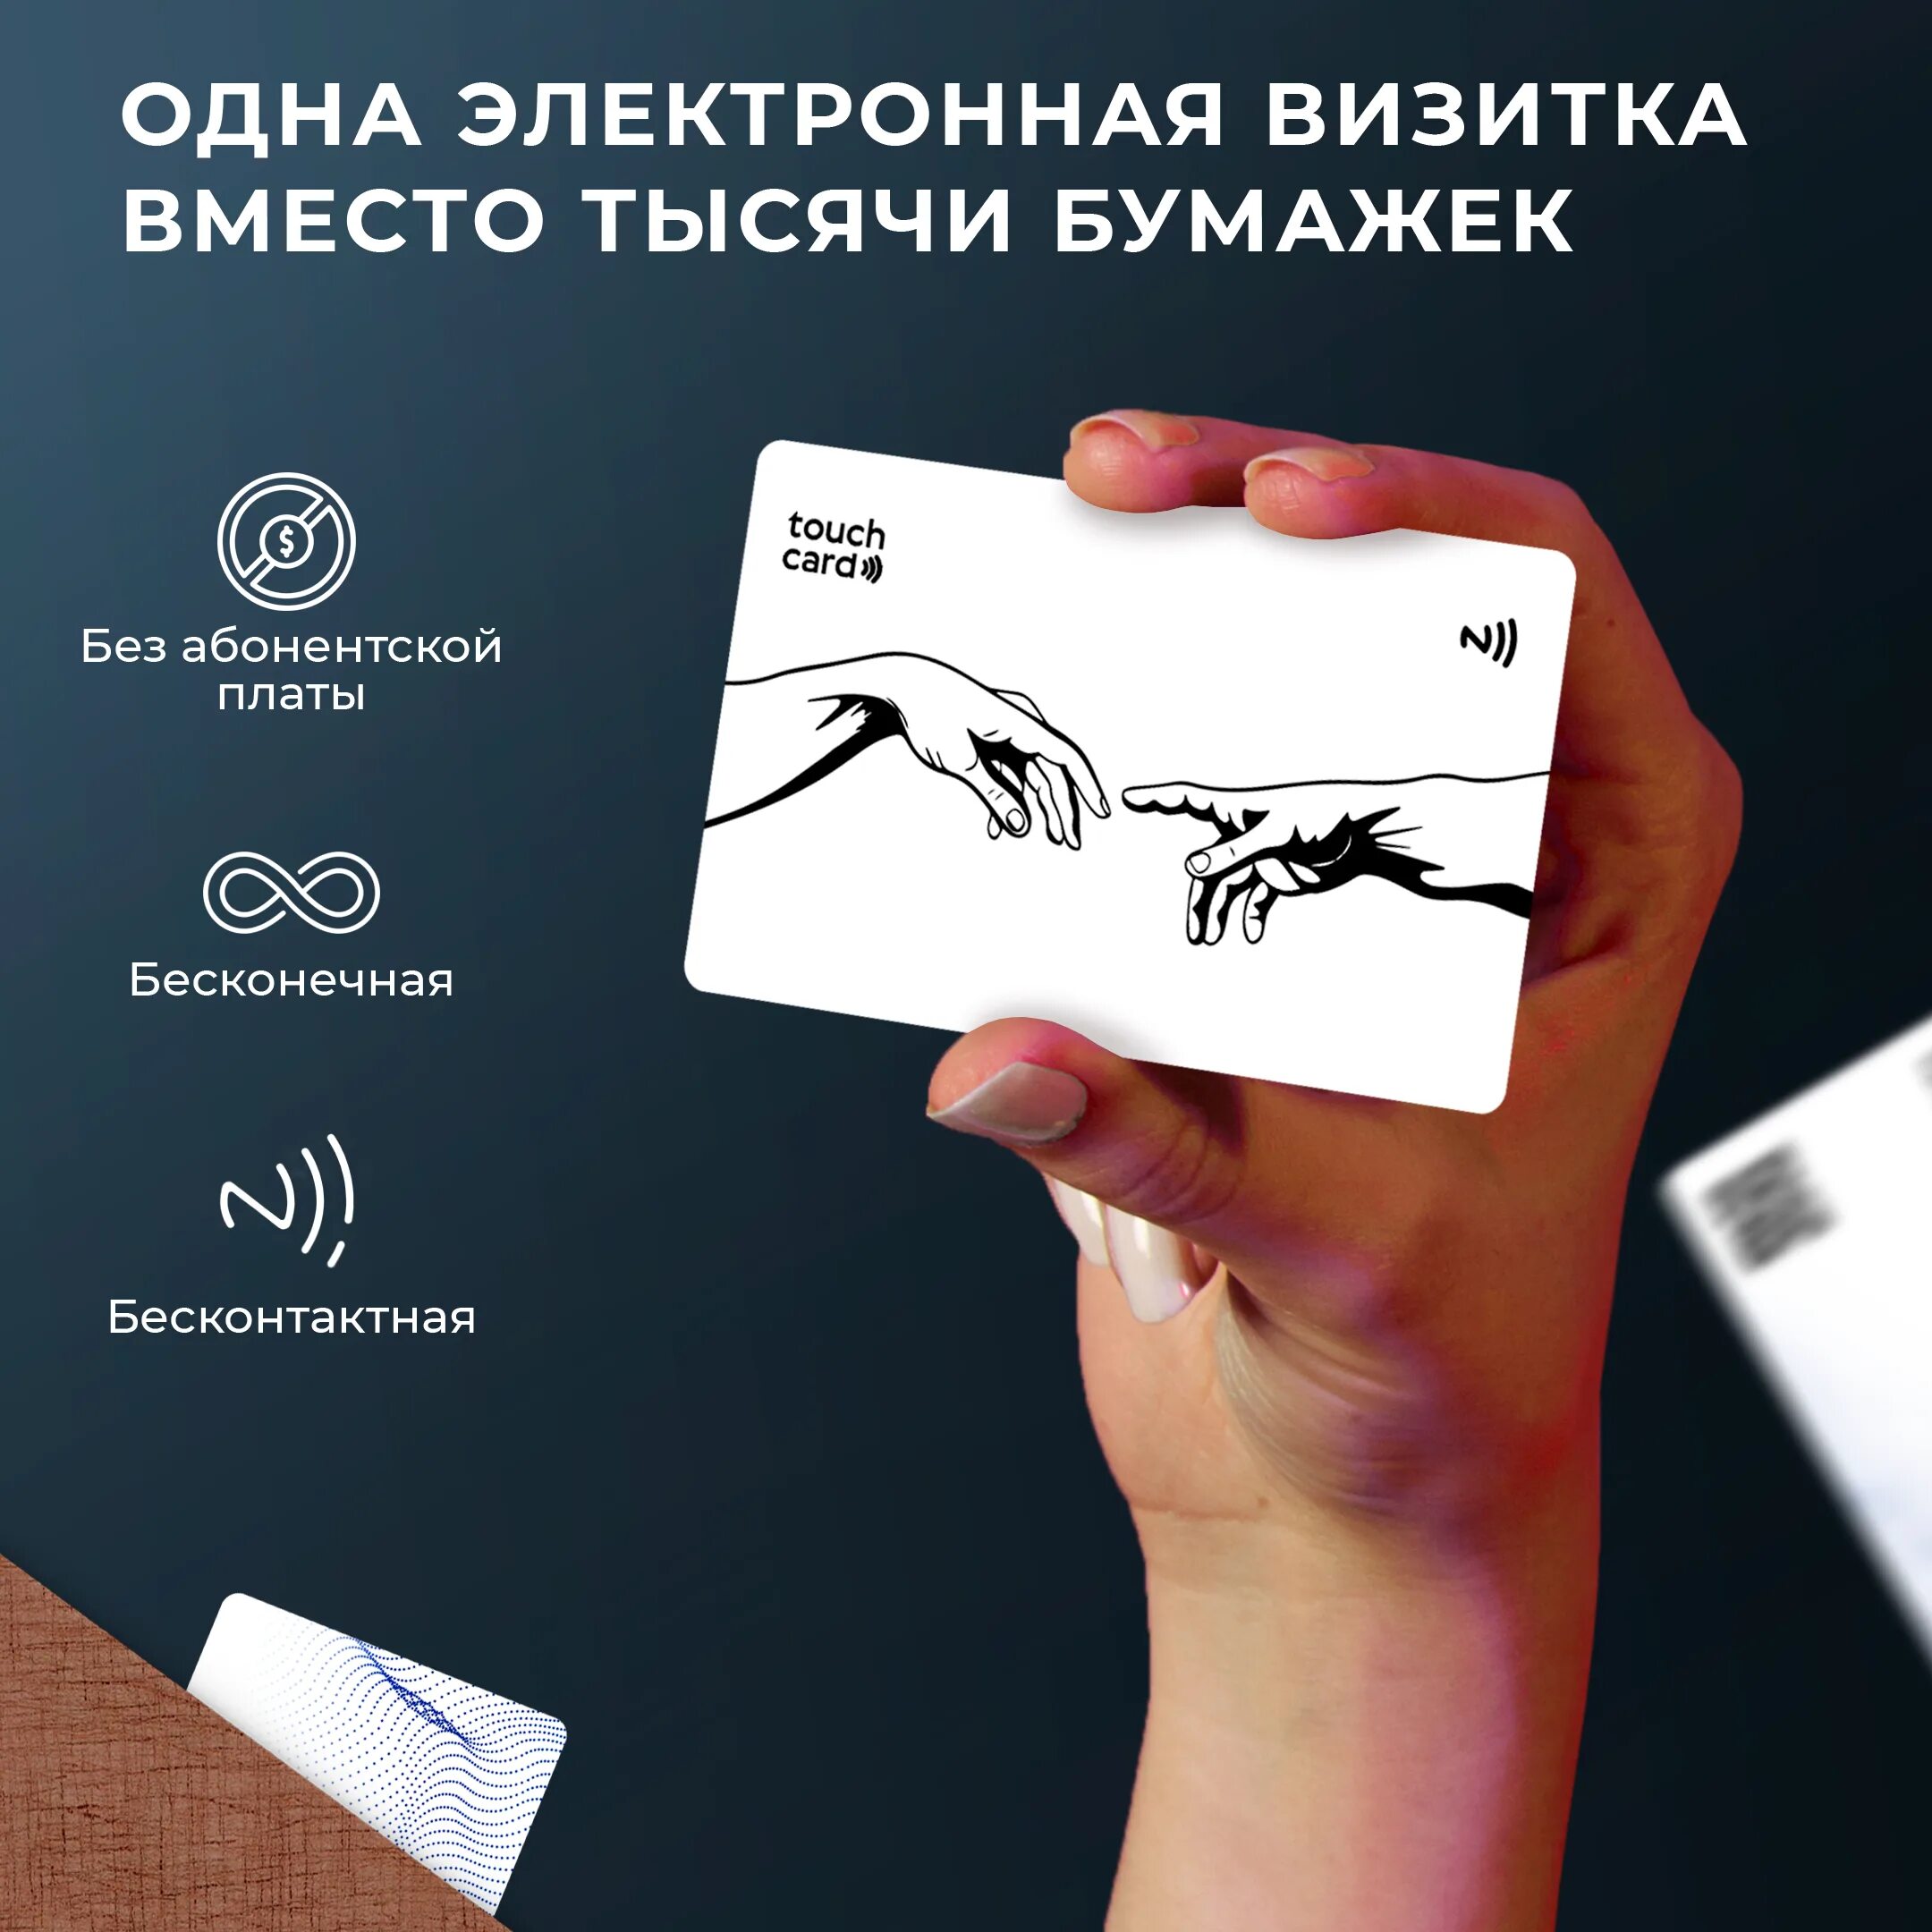 Телефон электронная визитка. Электронная визитка. Цифровая визитка. NFC визитка. Визитка электроники.